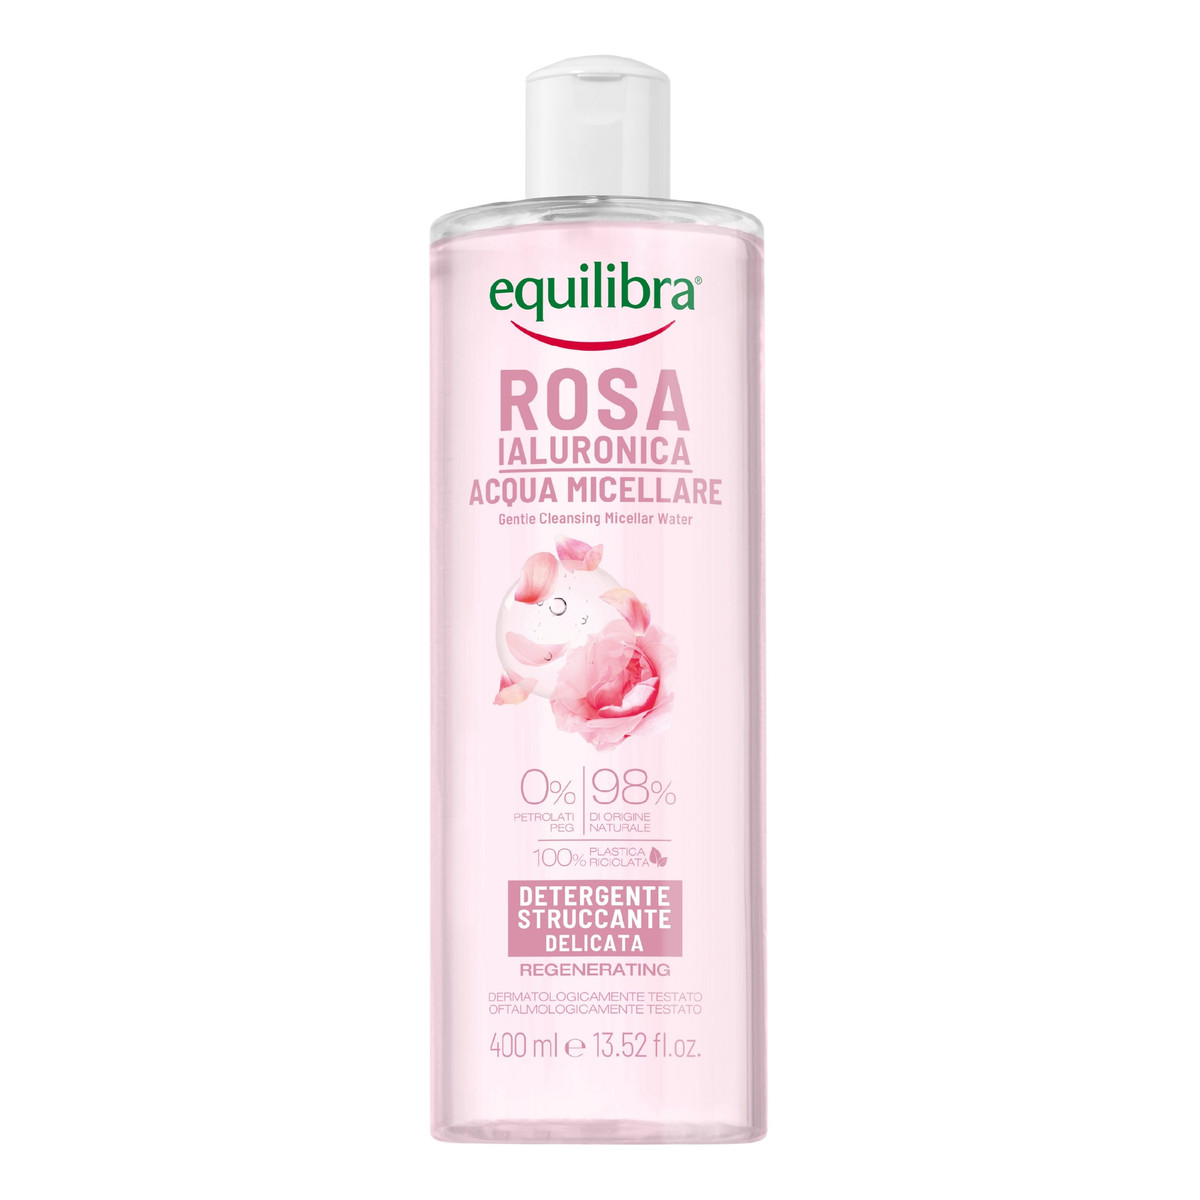 Equilibra Rosa Gentle Cleansing Micellar Water delikatnie oczyszczająca różana woda micelarna z kwasem hialuronowym 400ml